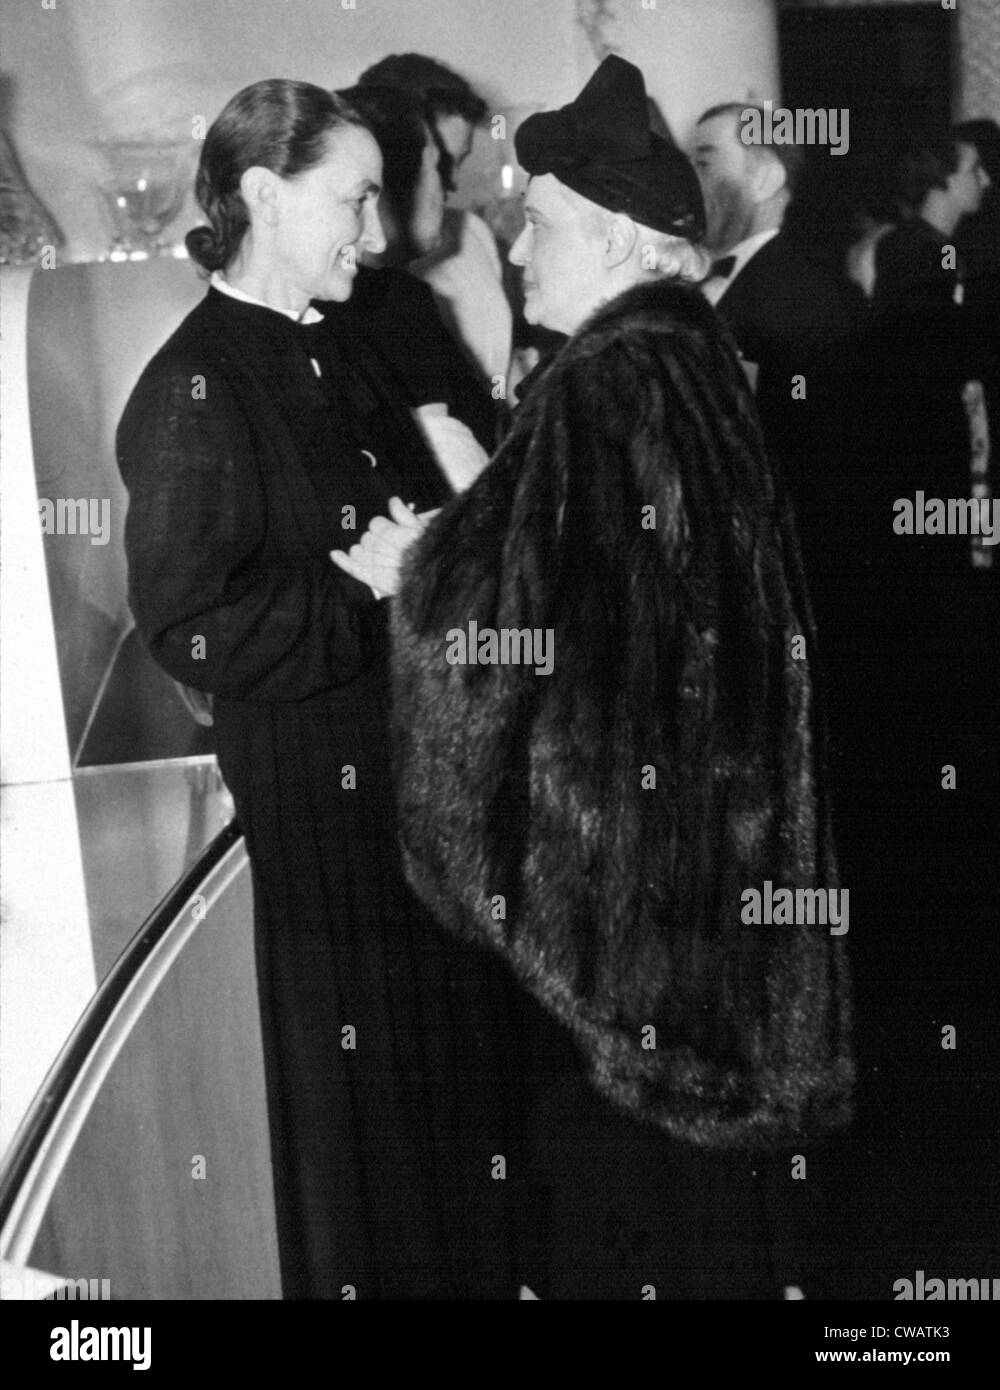 GEORGIA O'KEEFFE, Gruß Mrs Chester Dale, ein bekannter Kunstsammler, Januar 1940.  Foto-Höflichkeit: Everett/CSU Archive. Stockfoto